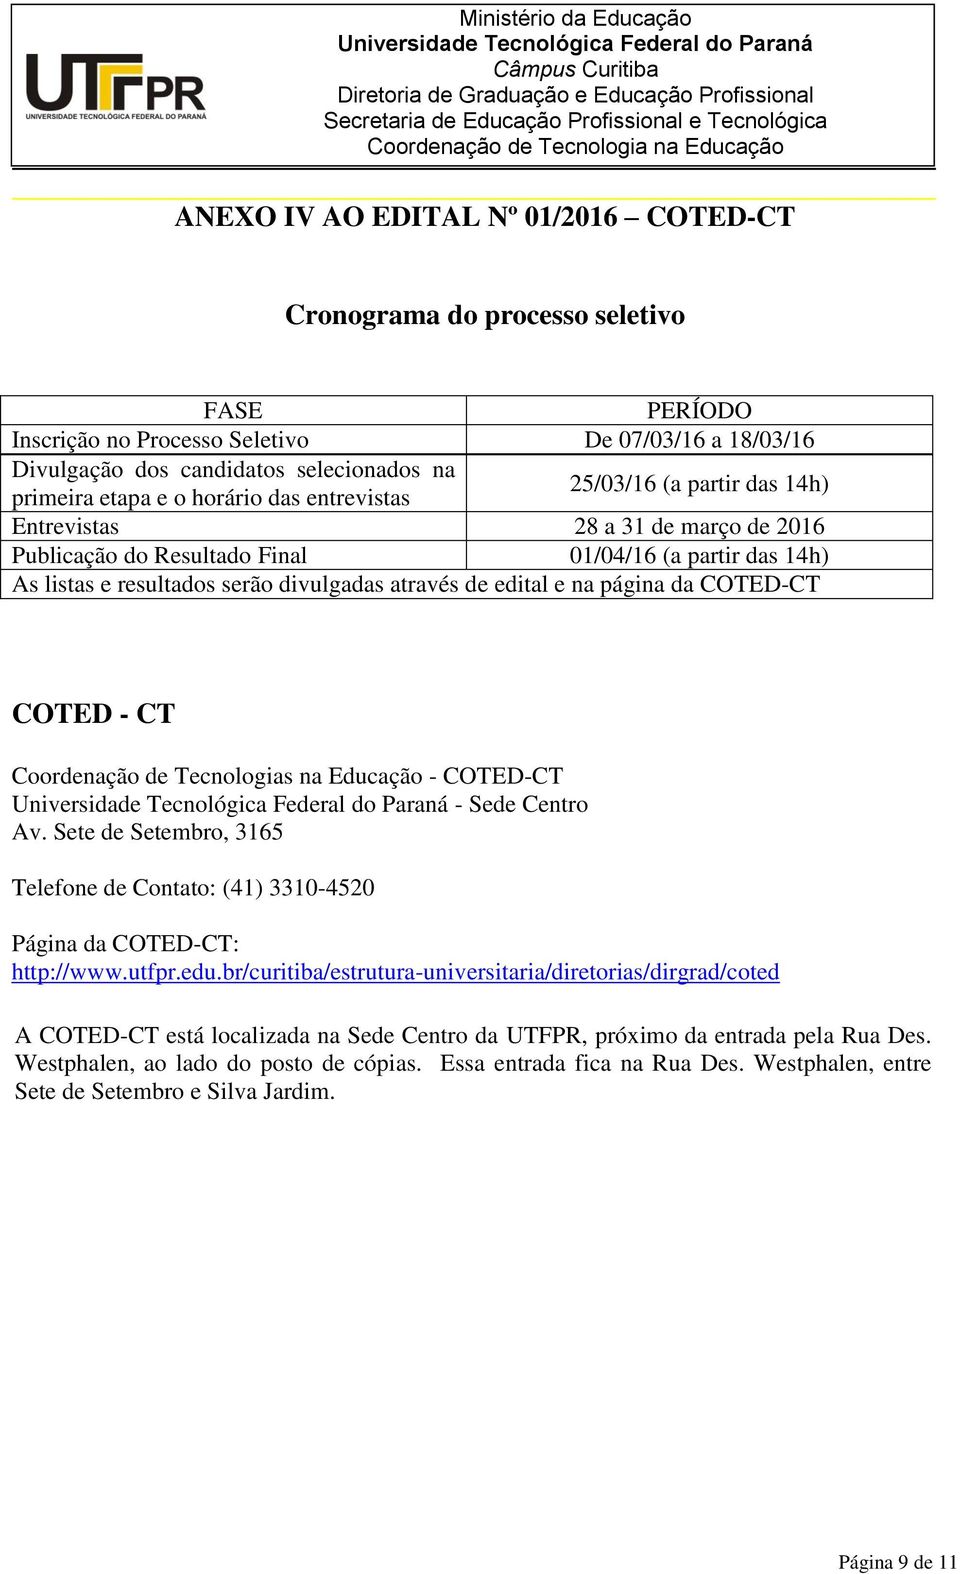 edital e na página da COTED-CT COTED - CT Coordenação de Tecnologias na Educação - COTED-CT - Sede Centro Av. Sete de Setembro, 3165 Telefone de Contato: (41) 3310-4520 Página da COTED-CT: http://www.